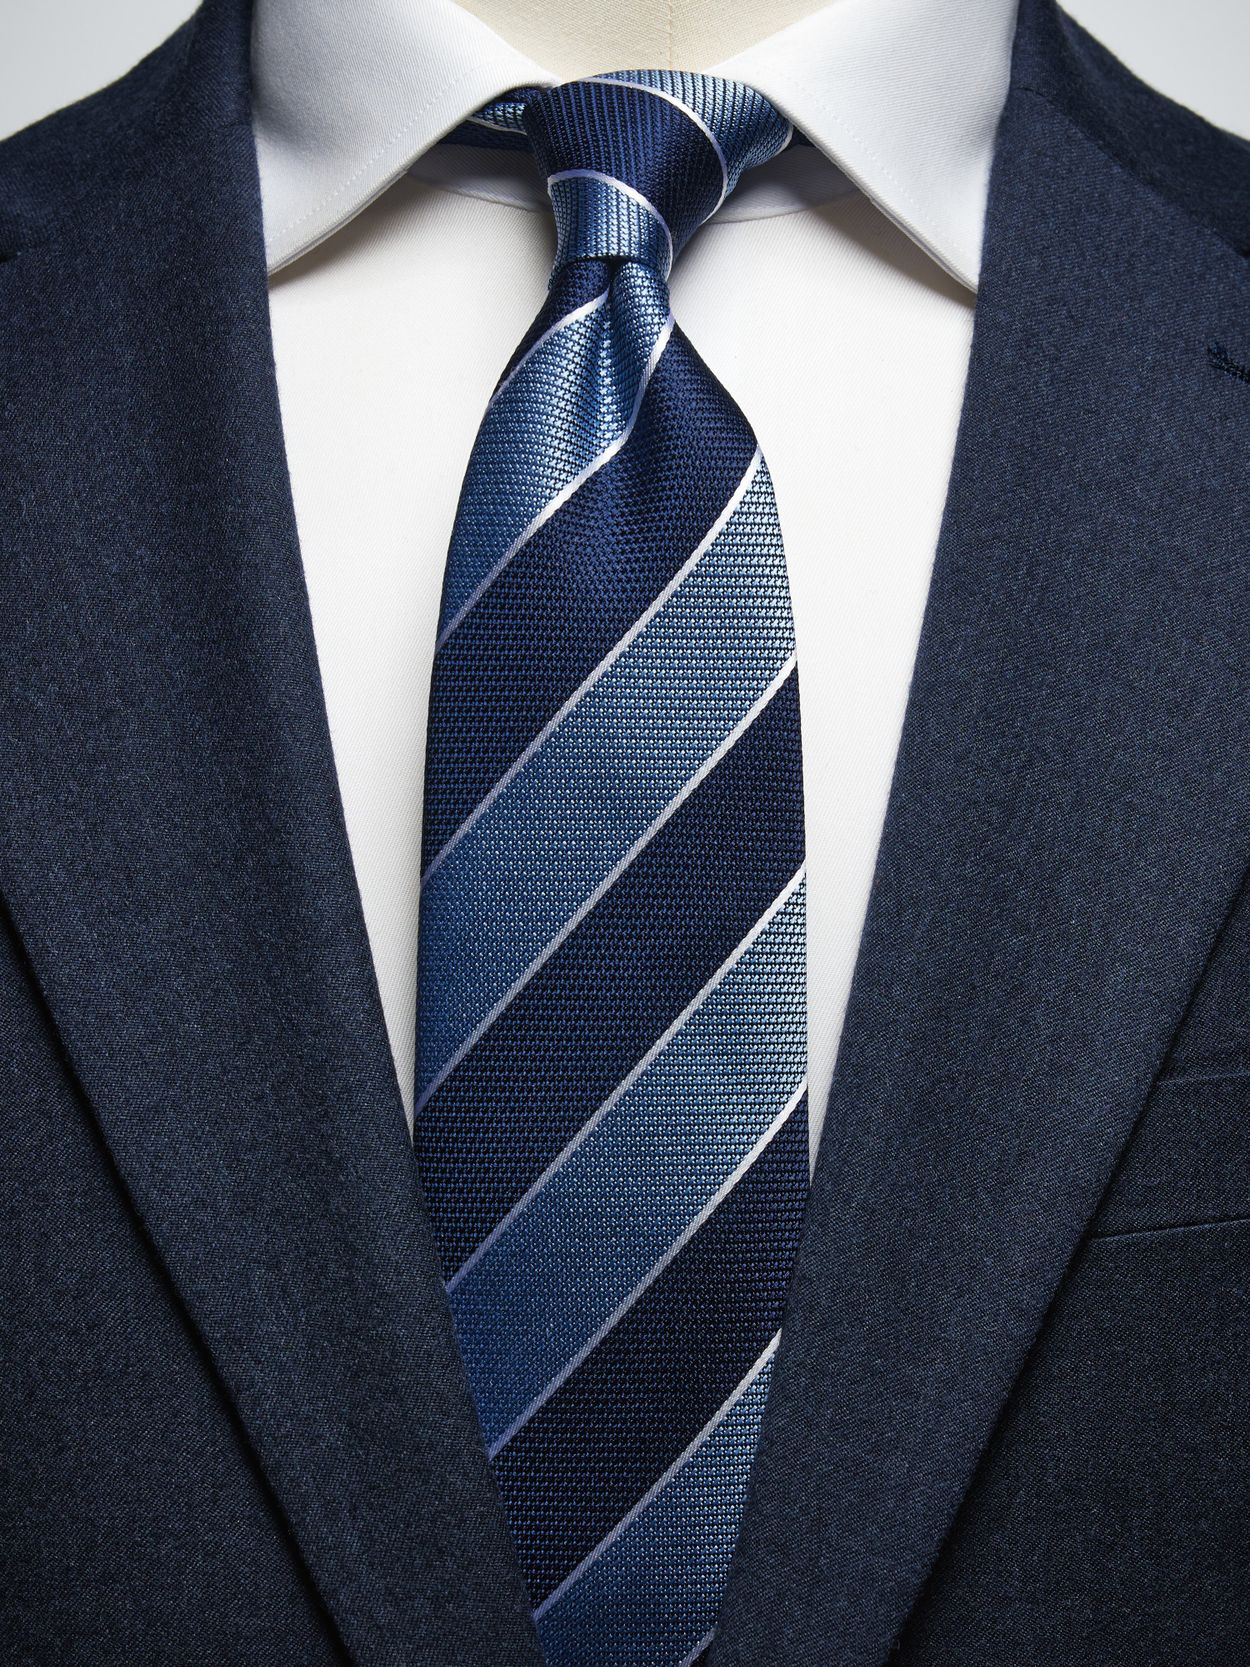 Blue & Light Blue Tie Stripe